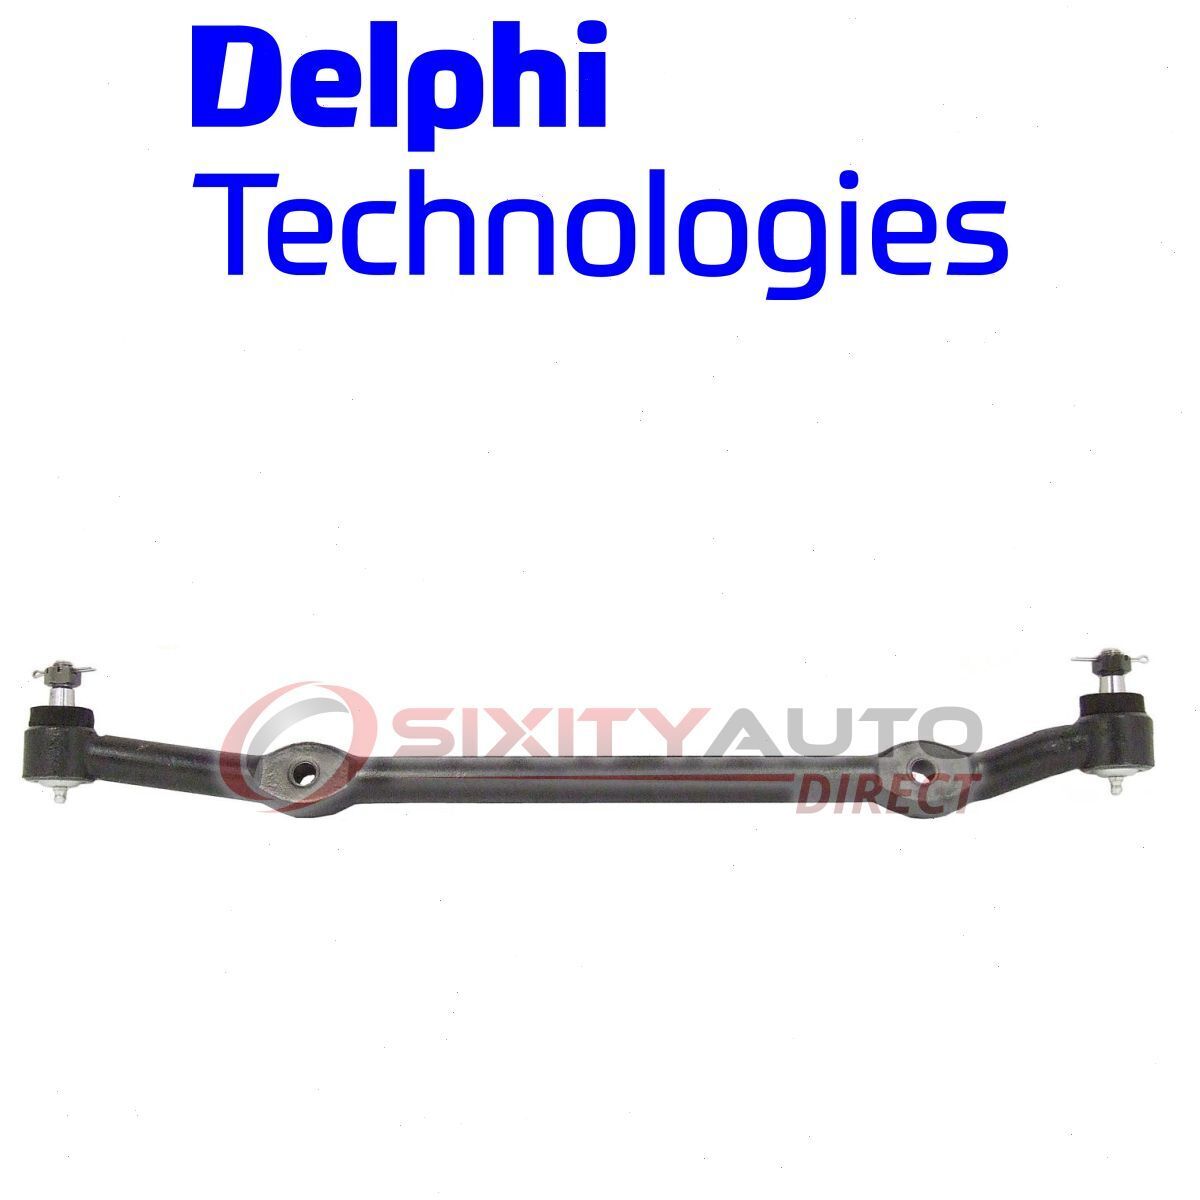 Delphi Steering Center Link for 1978-1987 Oldsmobile Cutlass Wheel Gear mj